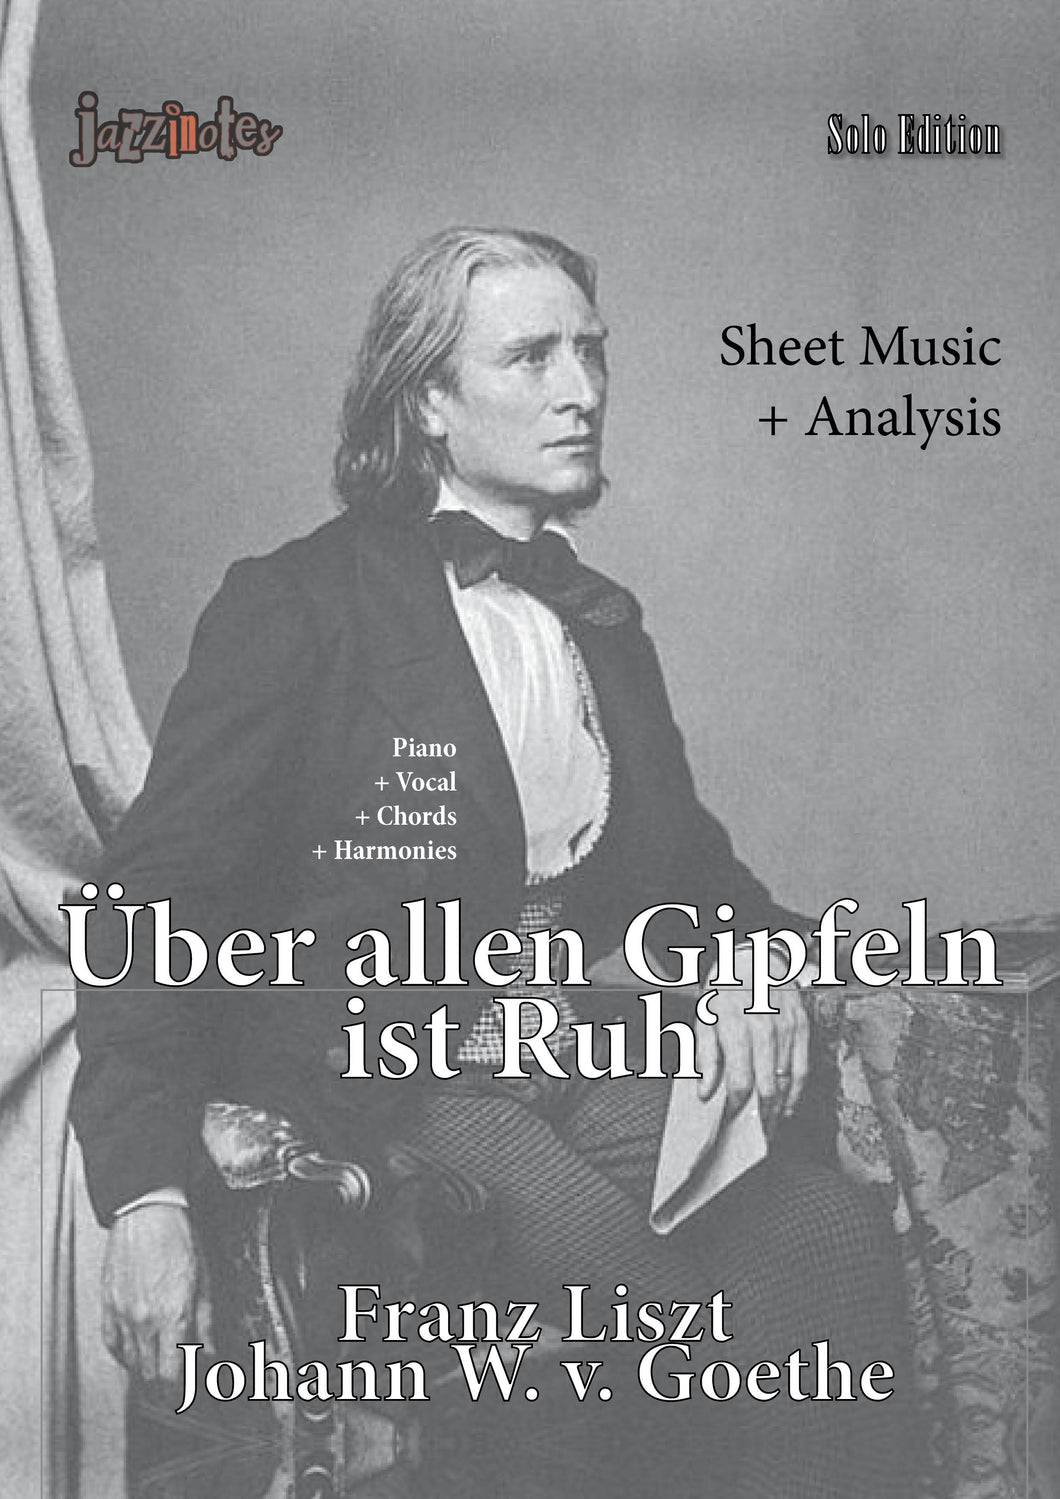 Liszt, Franz: Über allen Gipfeln ist Ruh' - Musiknoten Download und Analyse